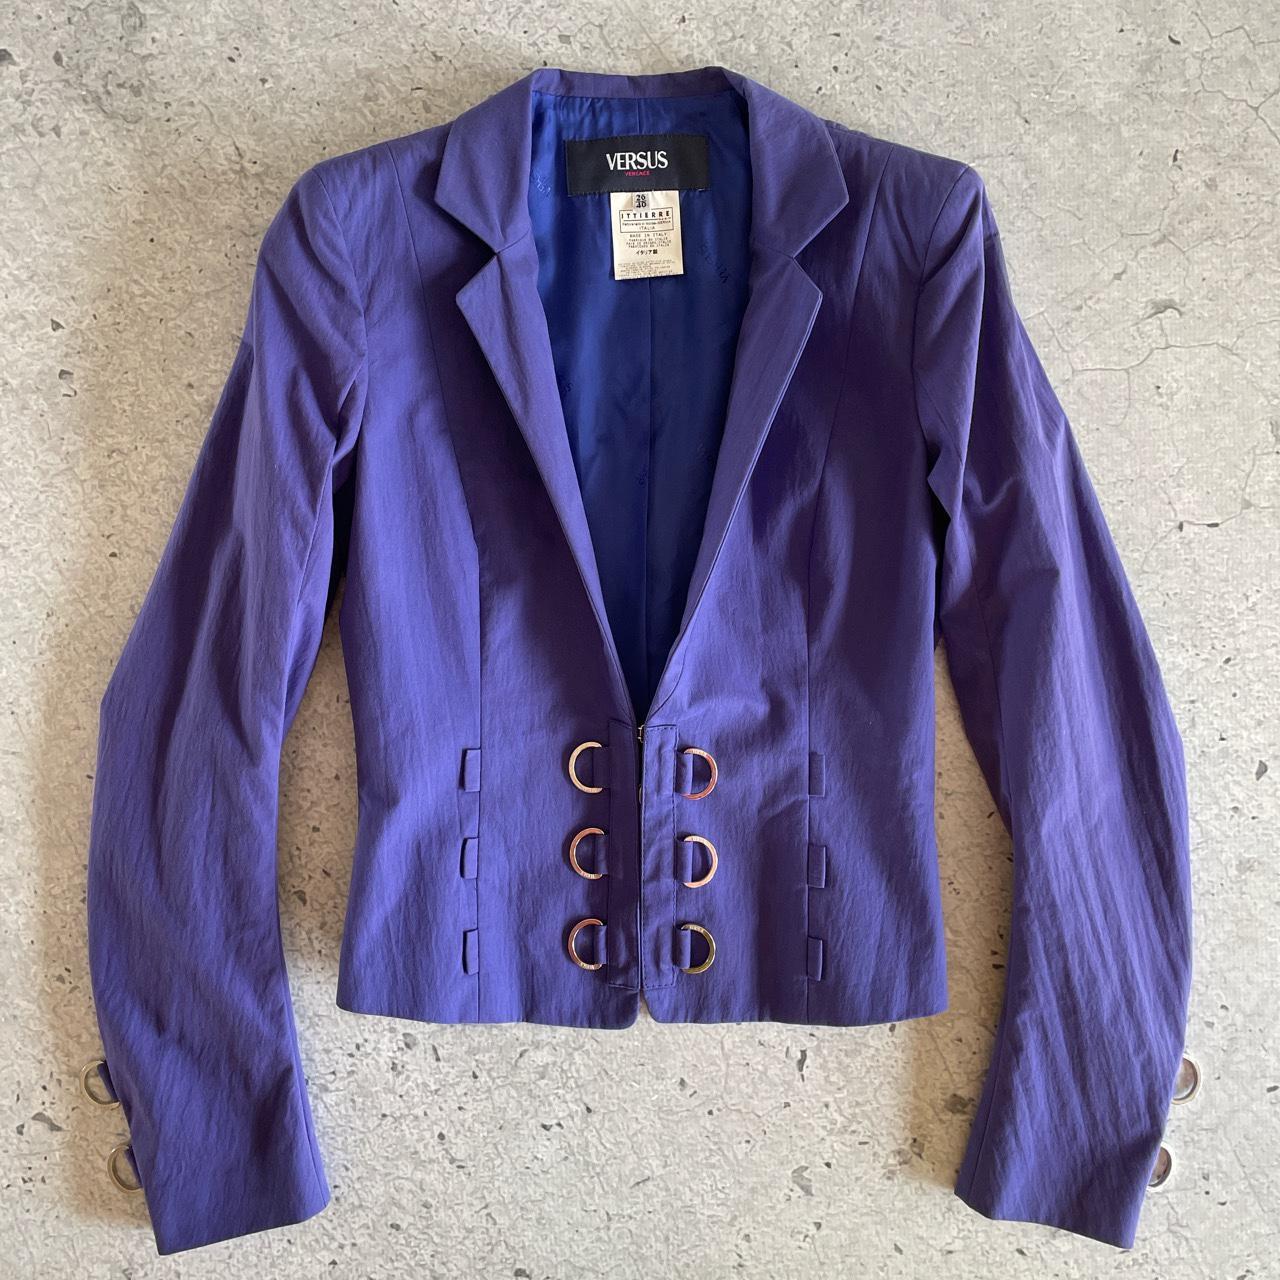 Versus Women's Purple Jacket